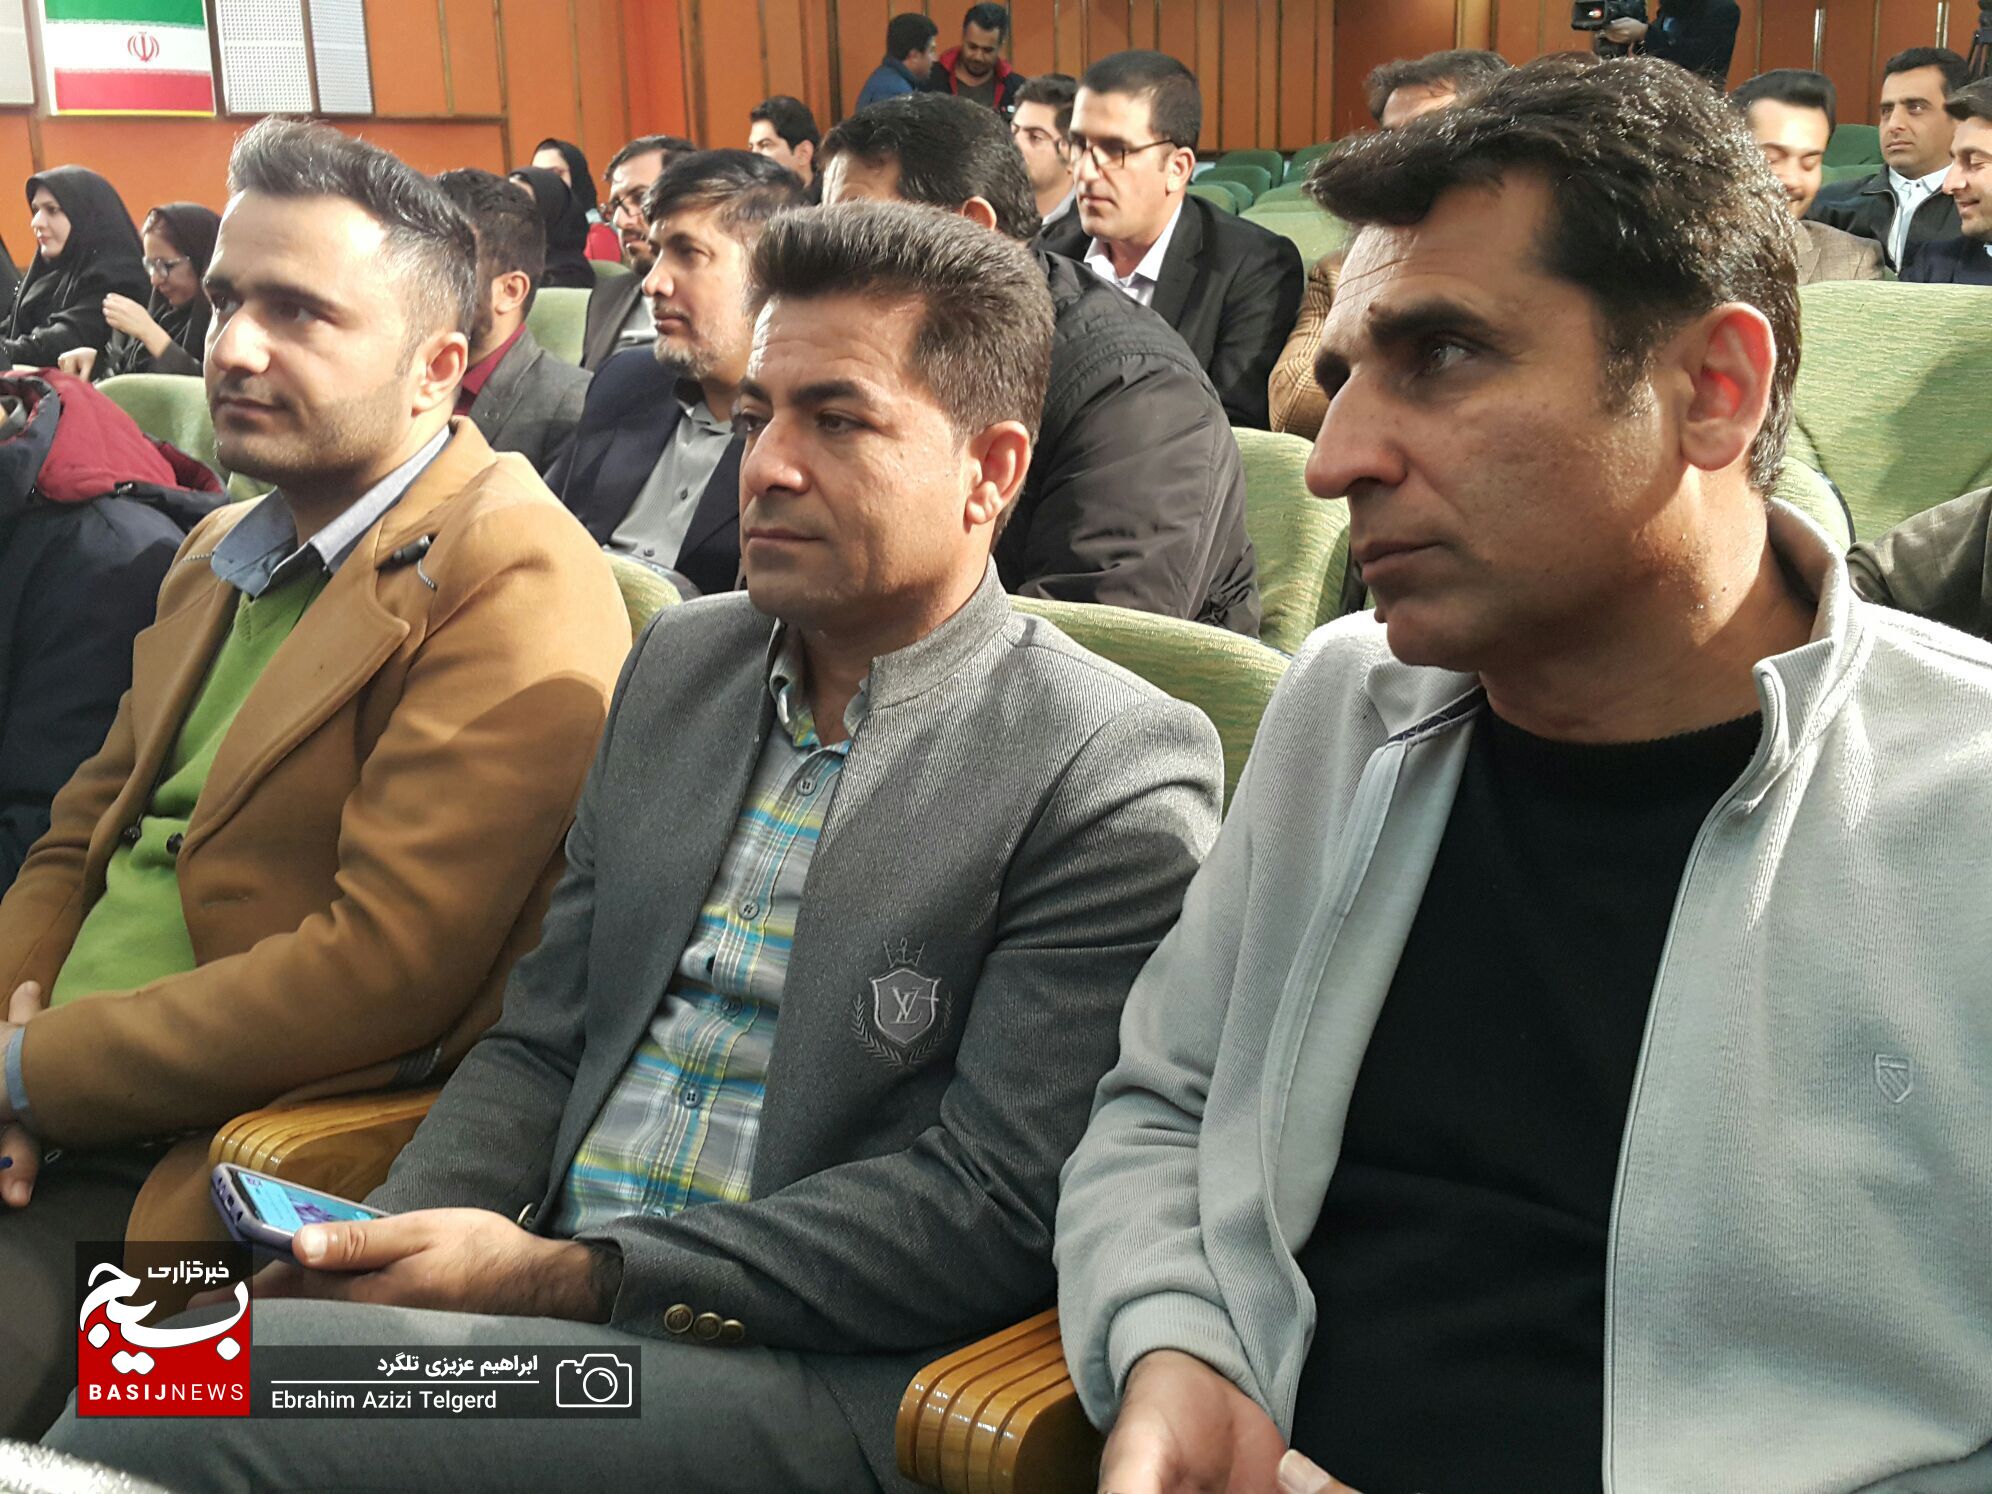 تصاویر جالب از آیین اختتامیه ششمین جشنواره رسانه ای ابوذر کهگیلویه و بویراحمد